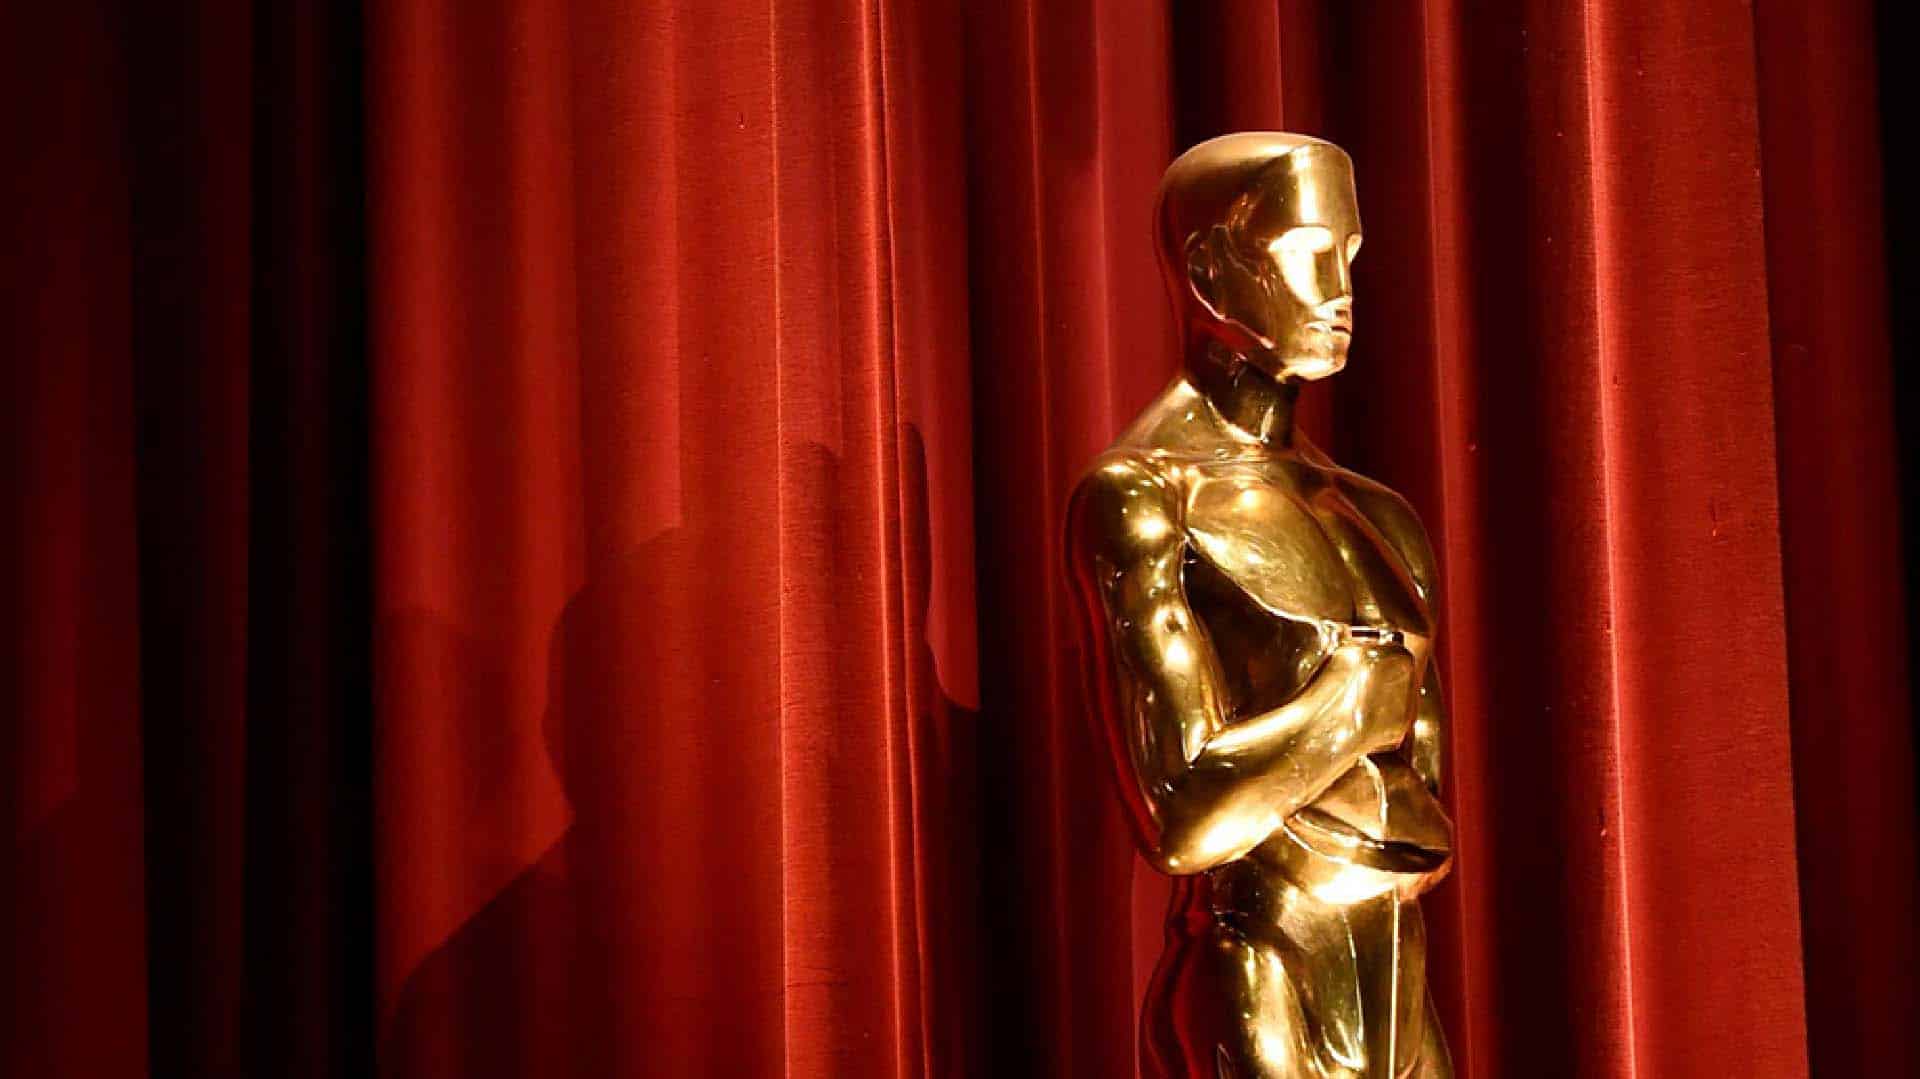 Sky Cinema Oscar: in arrivo il canale dedicato ai film premiati